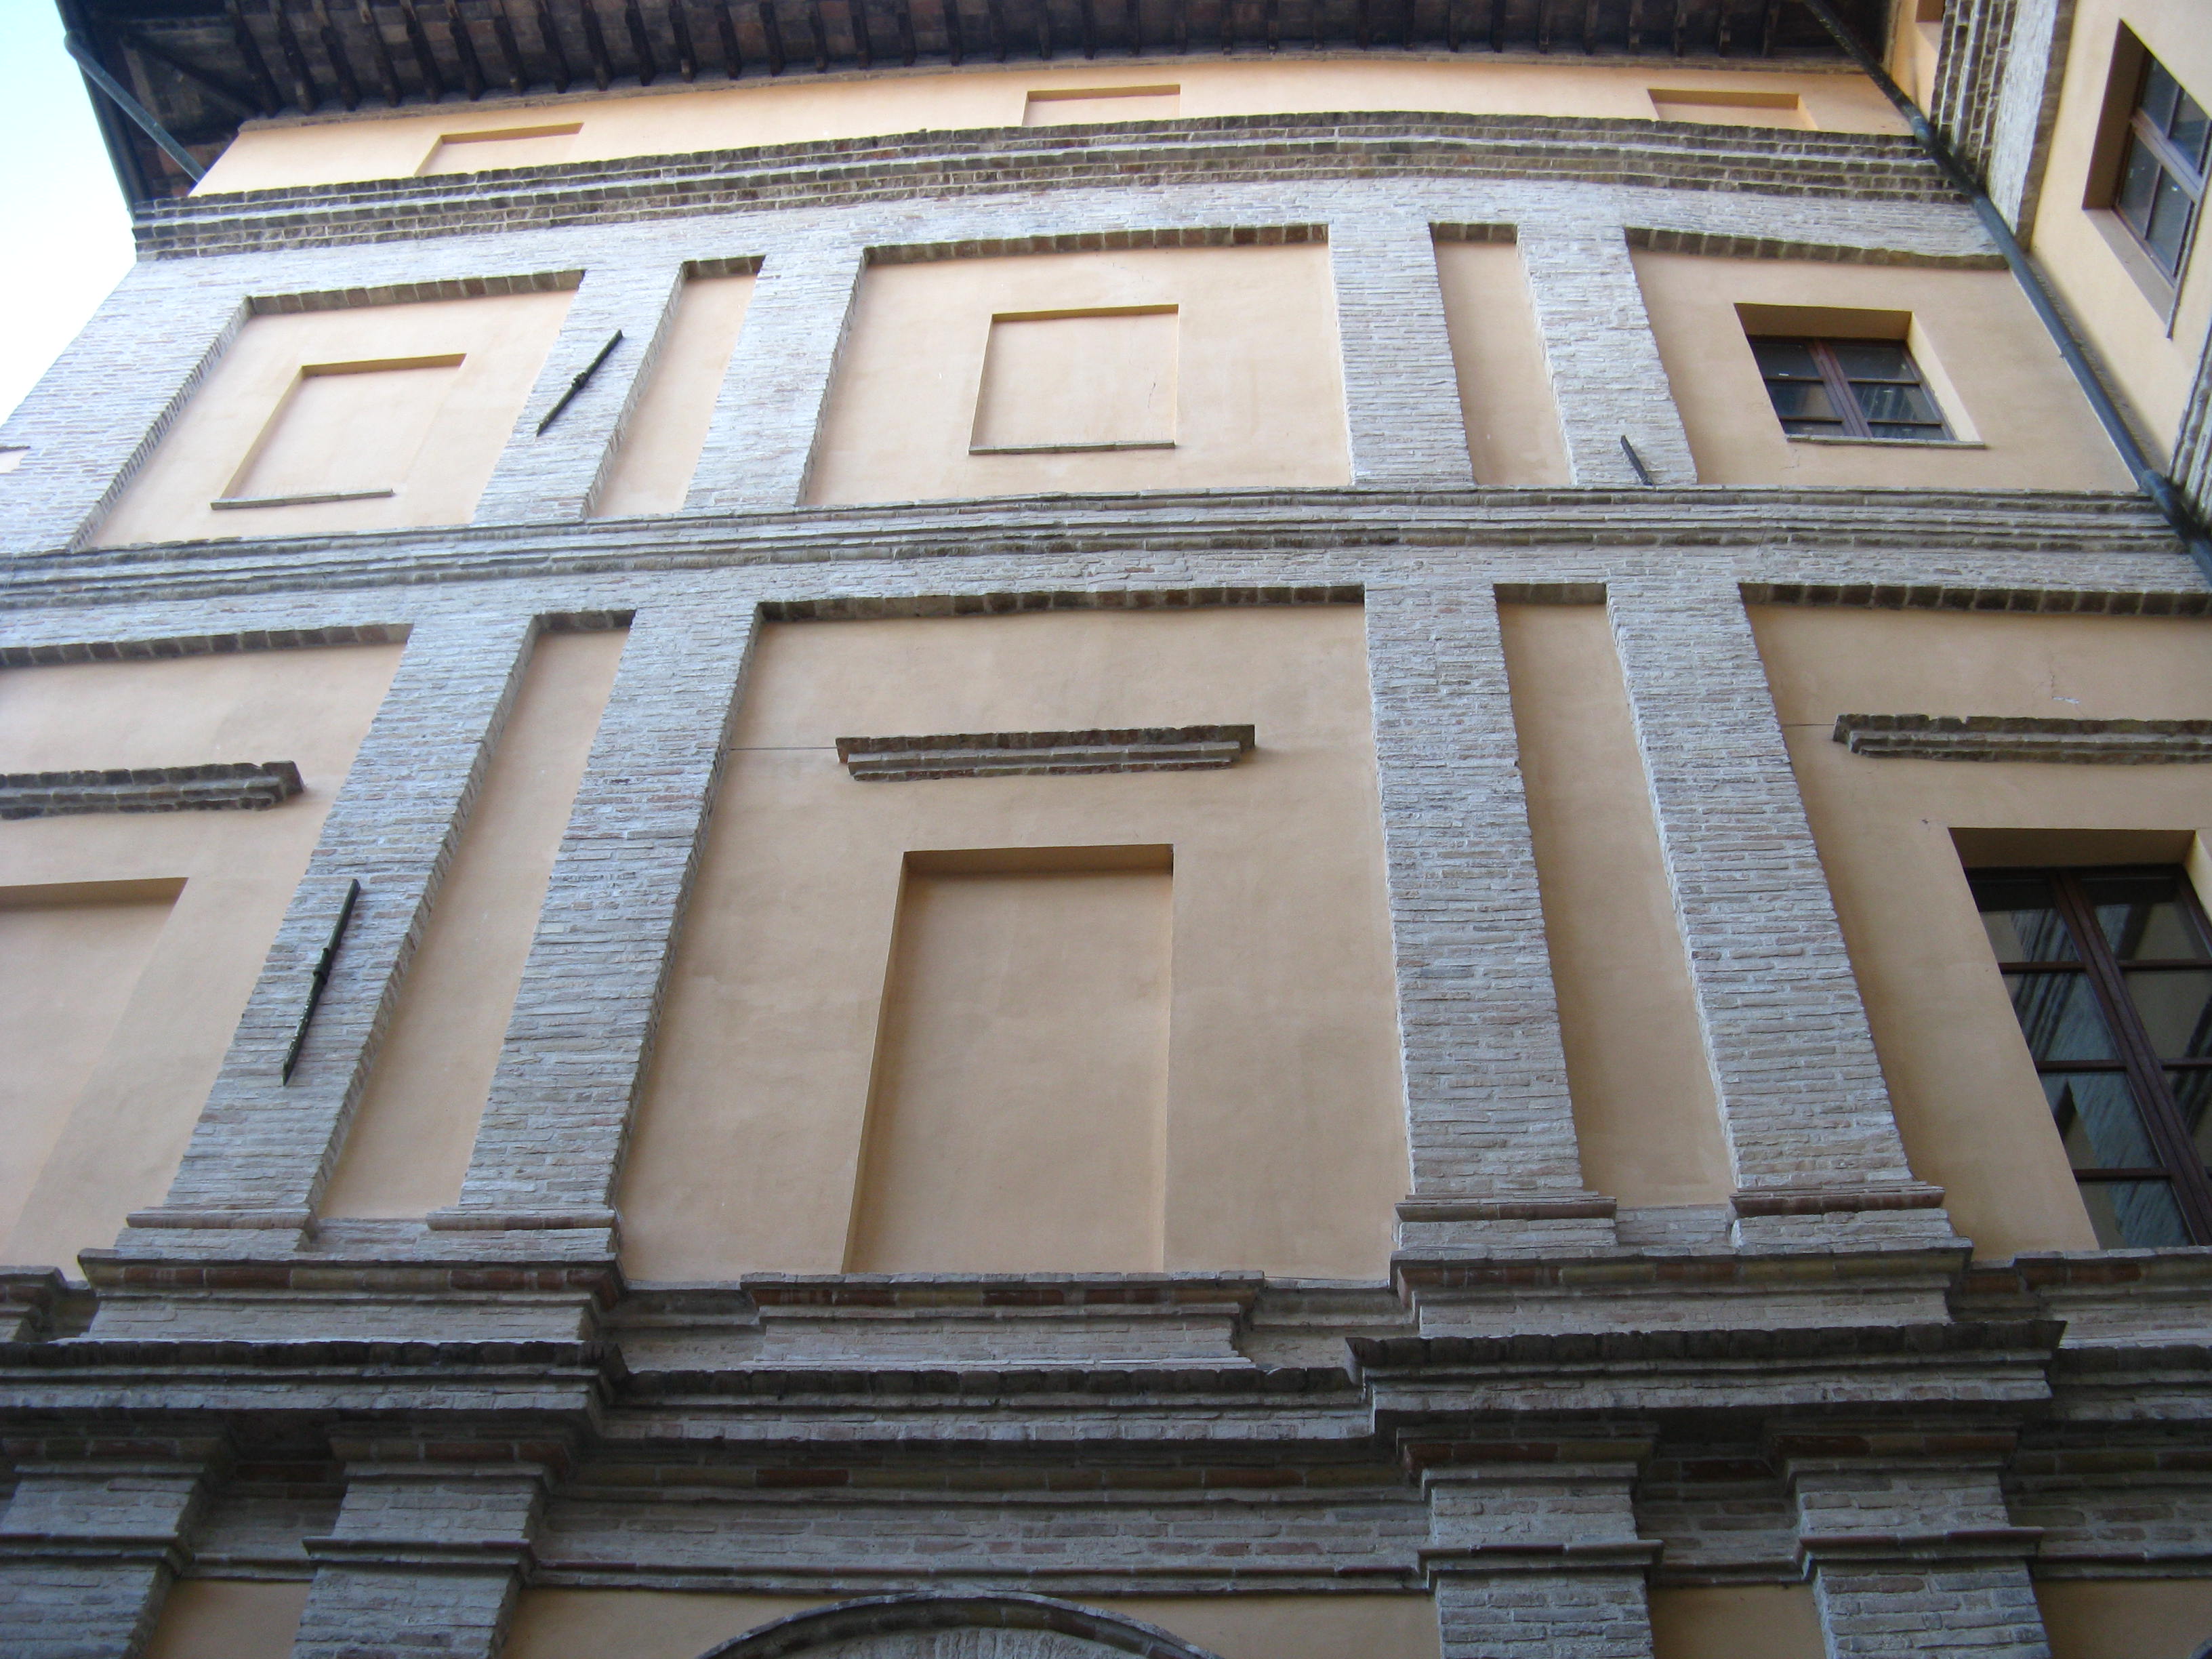 Palazzo Servanzi (palazzo, signorile) - San Severino Marche (MC) 